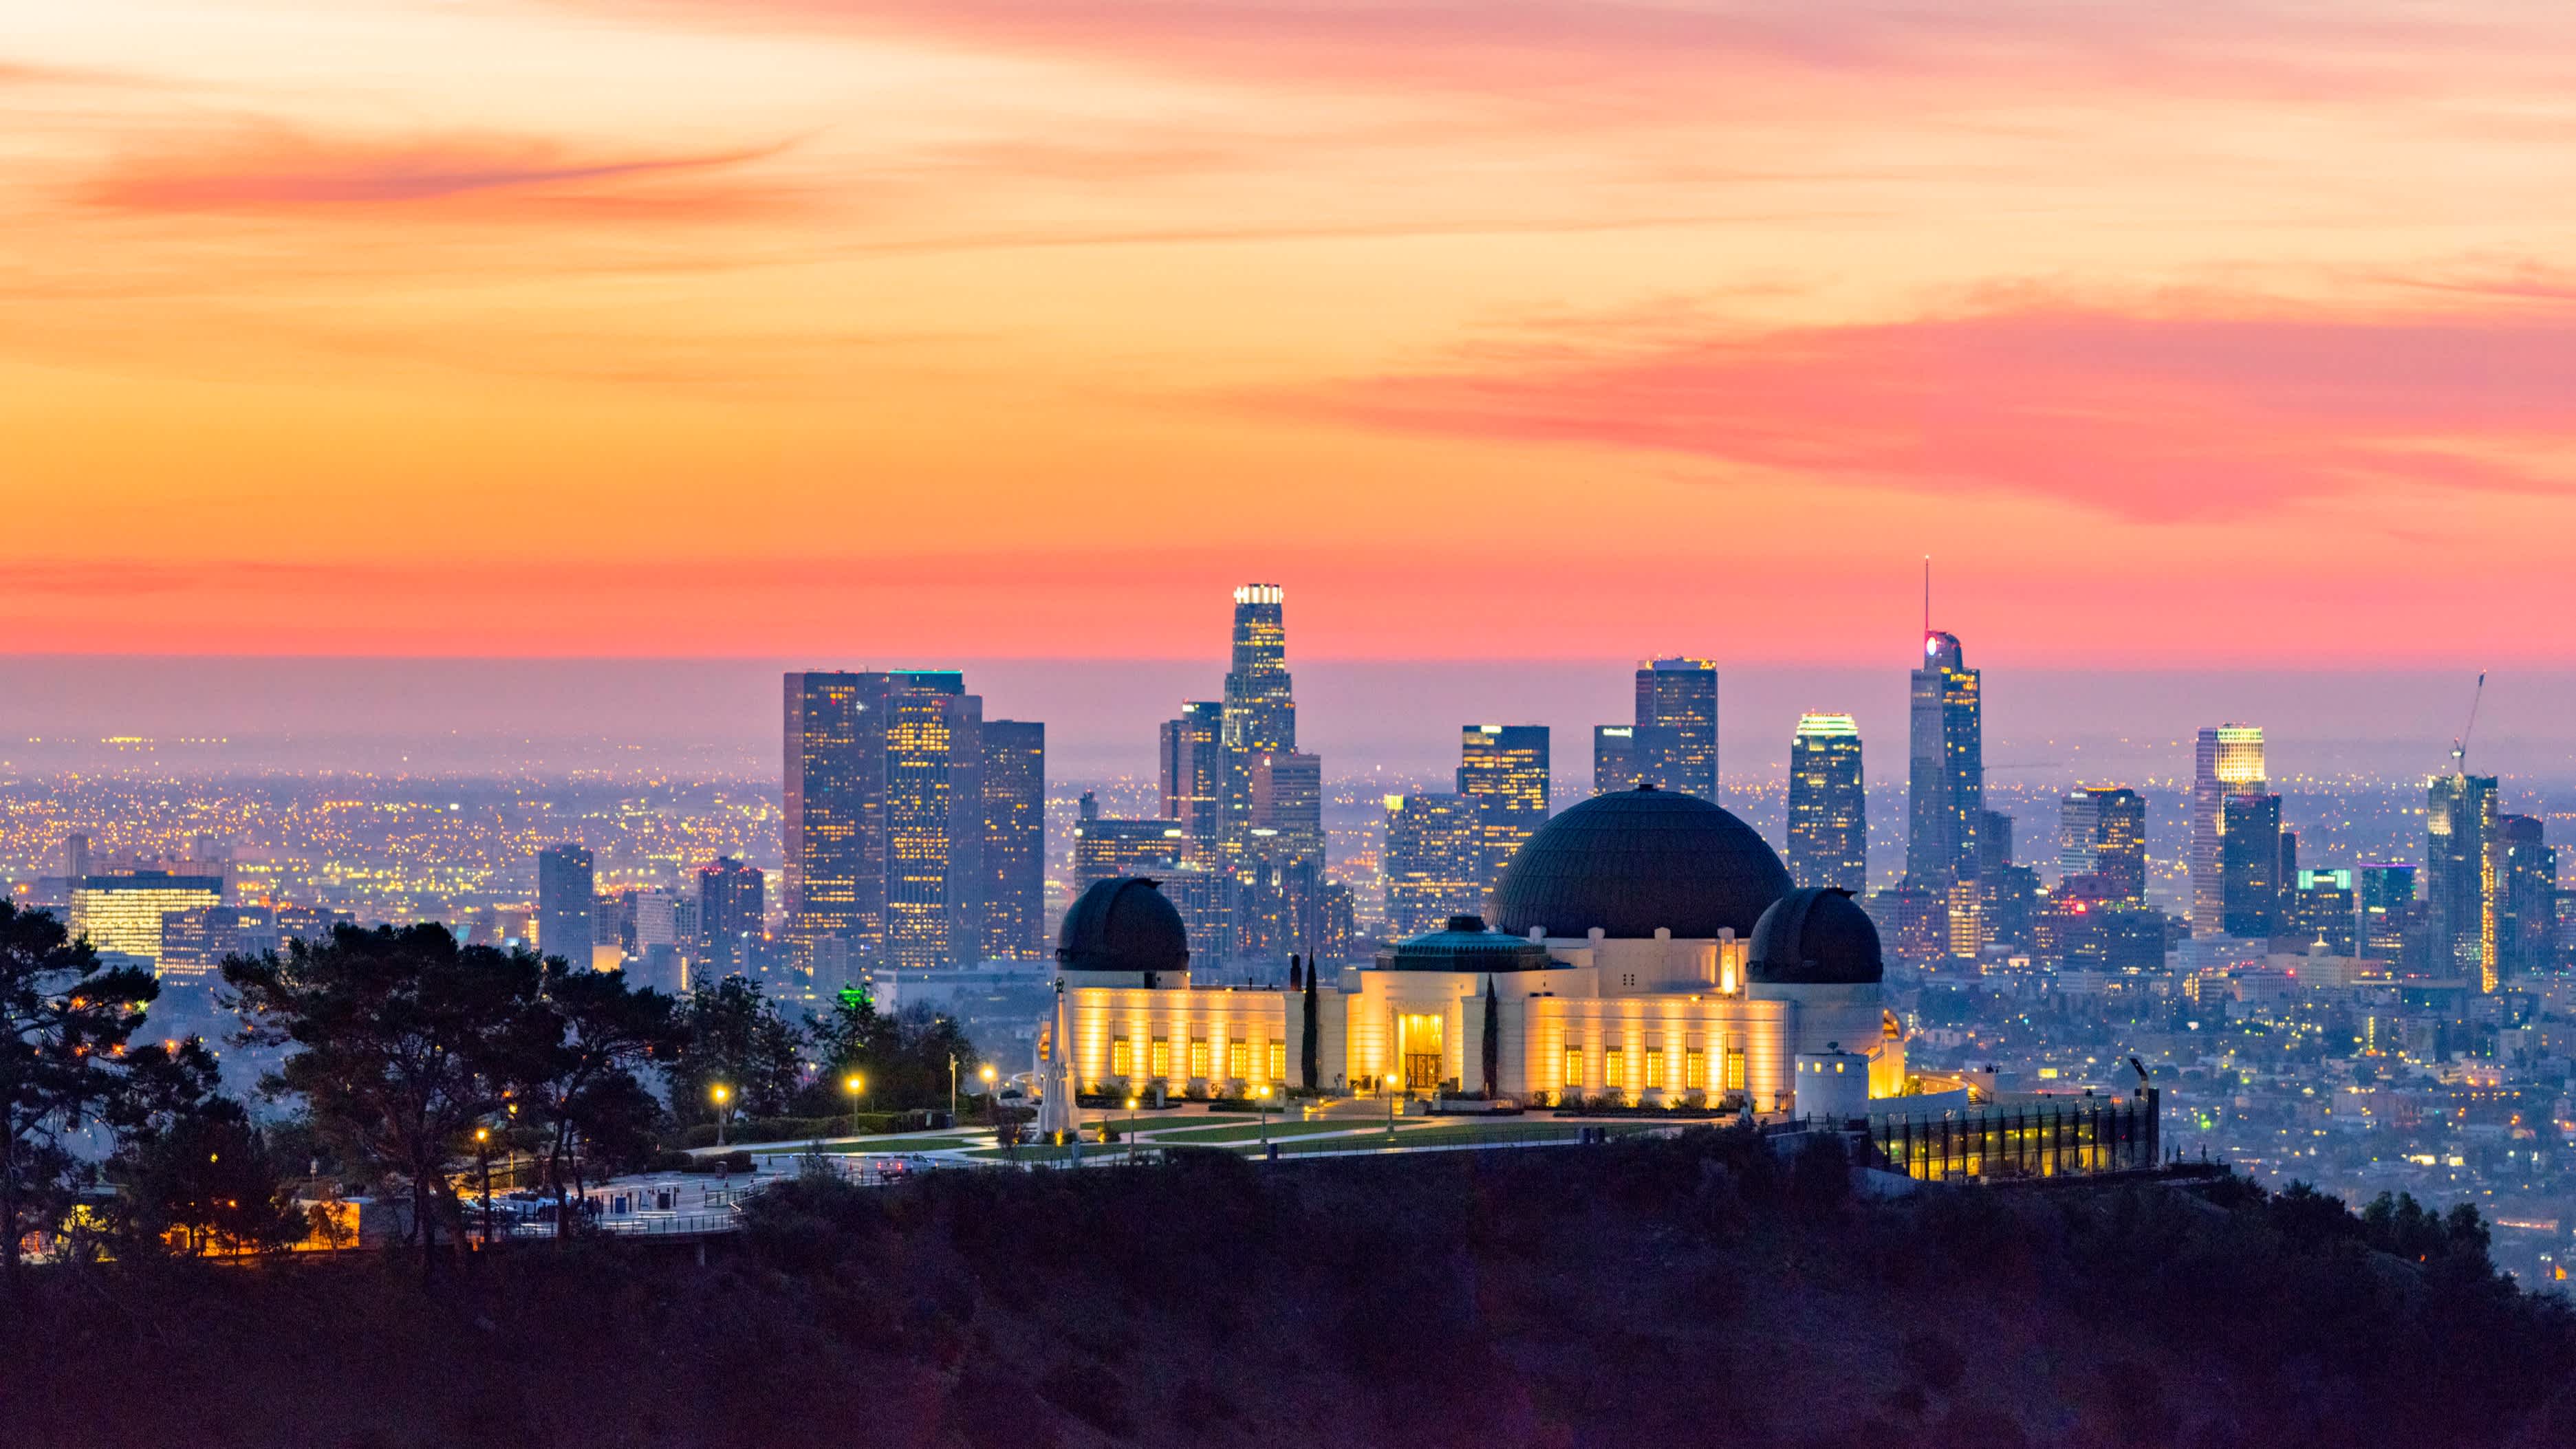 Vue aérienne sur le célèbre observatoire de Griffith Park, un lieu célèbre à visiter pendant votre voyage à Los Angeles, au coucher du soleil avec la skyline de Los Angeles en arrière-plan.